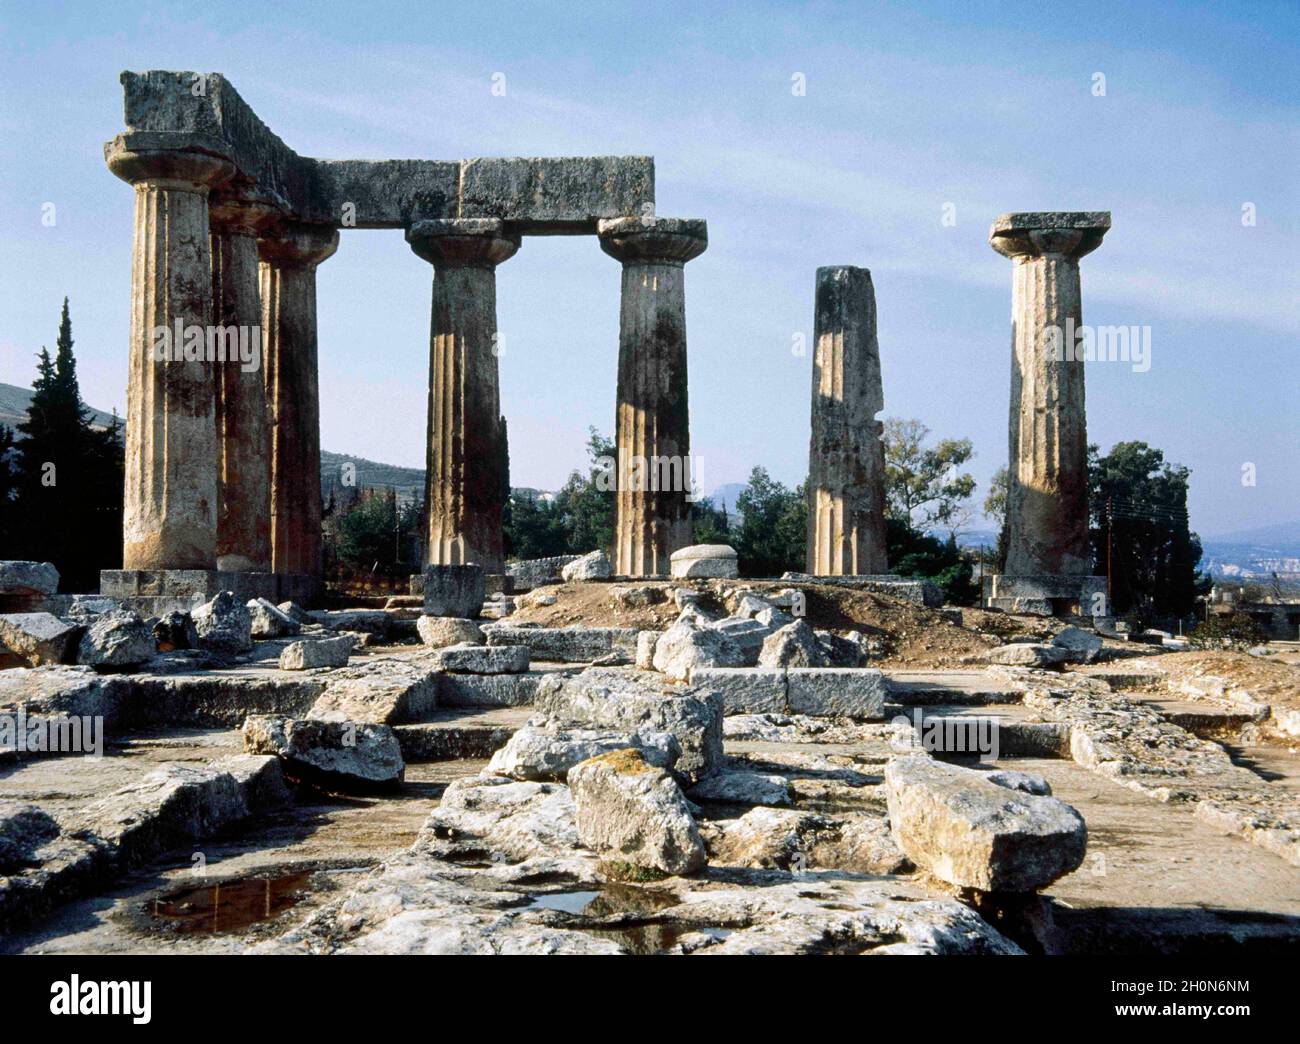 Griechenland. Antikes Korinth (polis). Ruinen des Apollotempels, 6.  Jahrhundert v. Chr. dorischer Stil. Heute nur sieben stehende Säulen des  westlichen Pterons Stockfotografie - Alamy